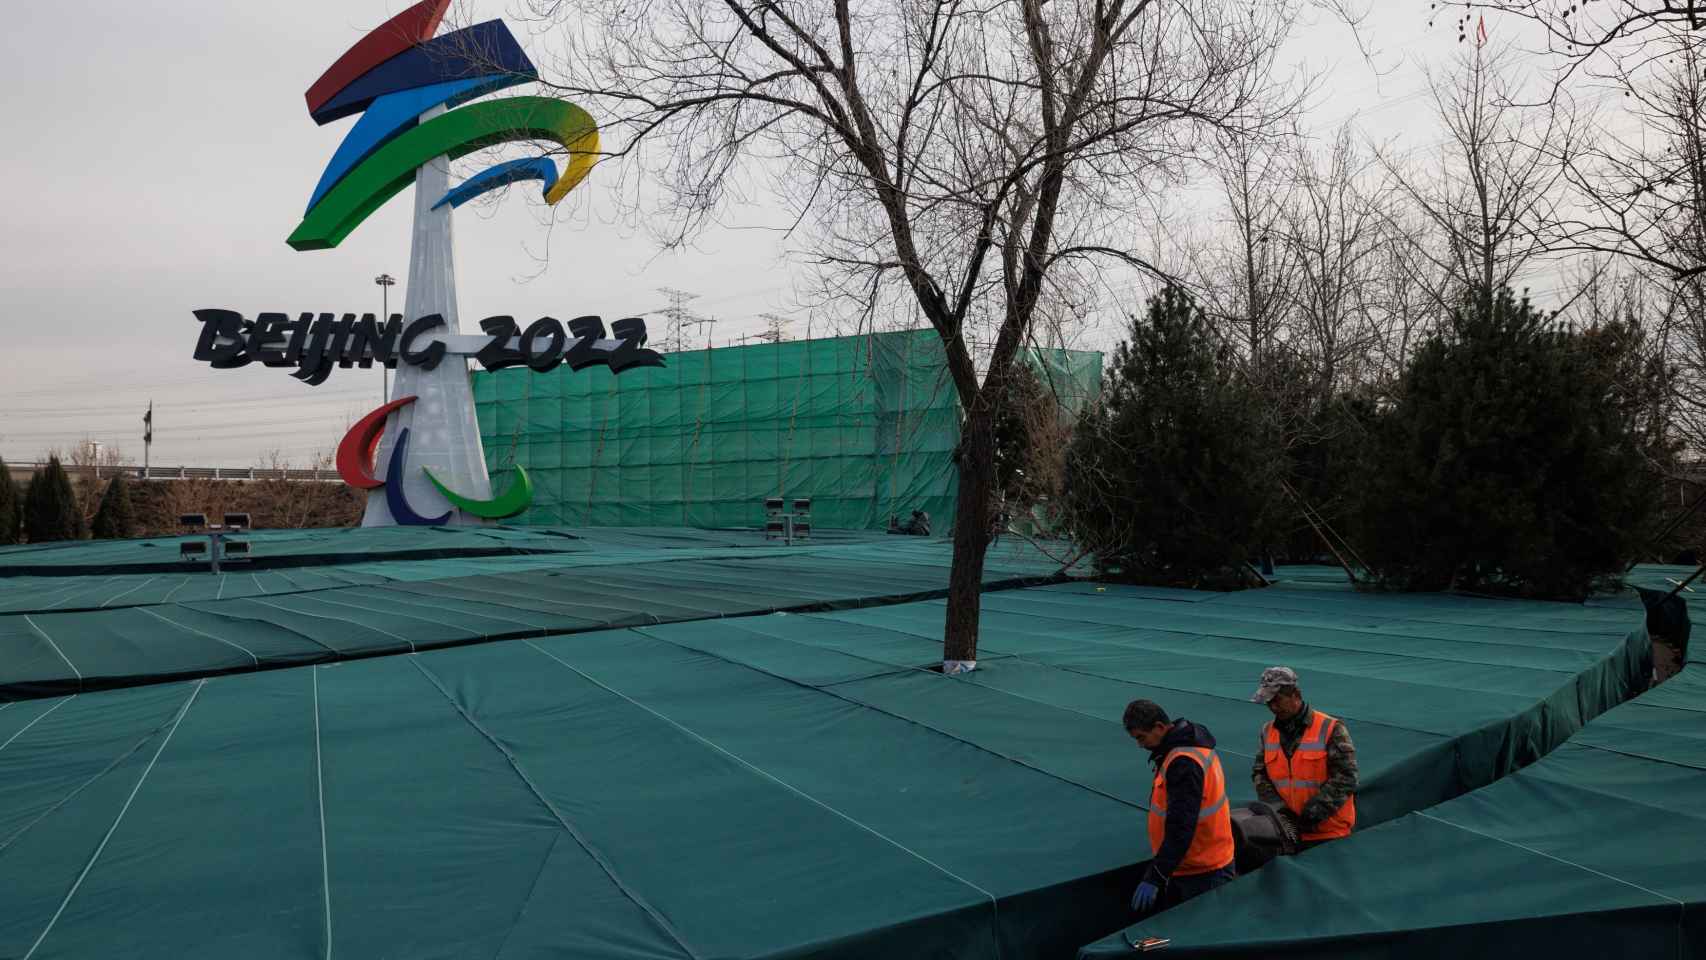 Una de las localizaciones donde se celebrarán los Juegos Olímpicos de Invierno de Pekín 2022